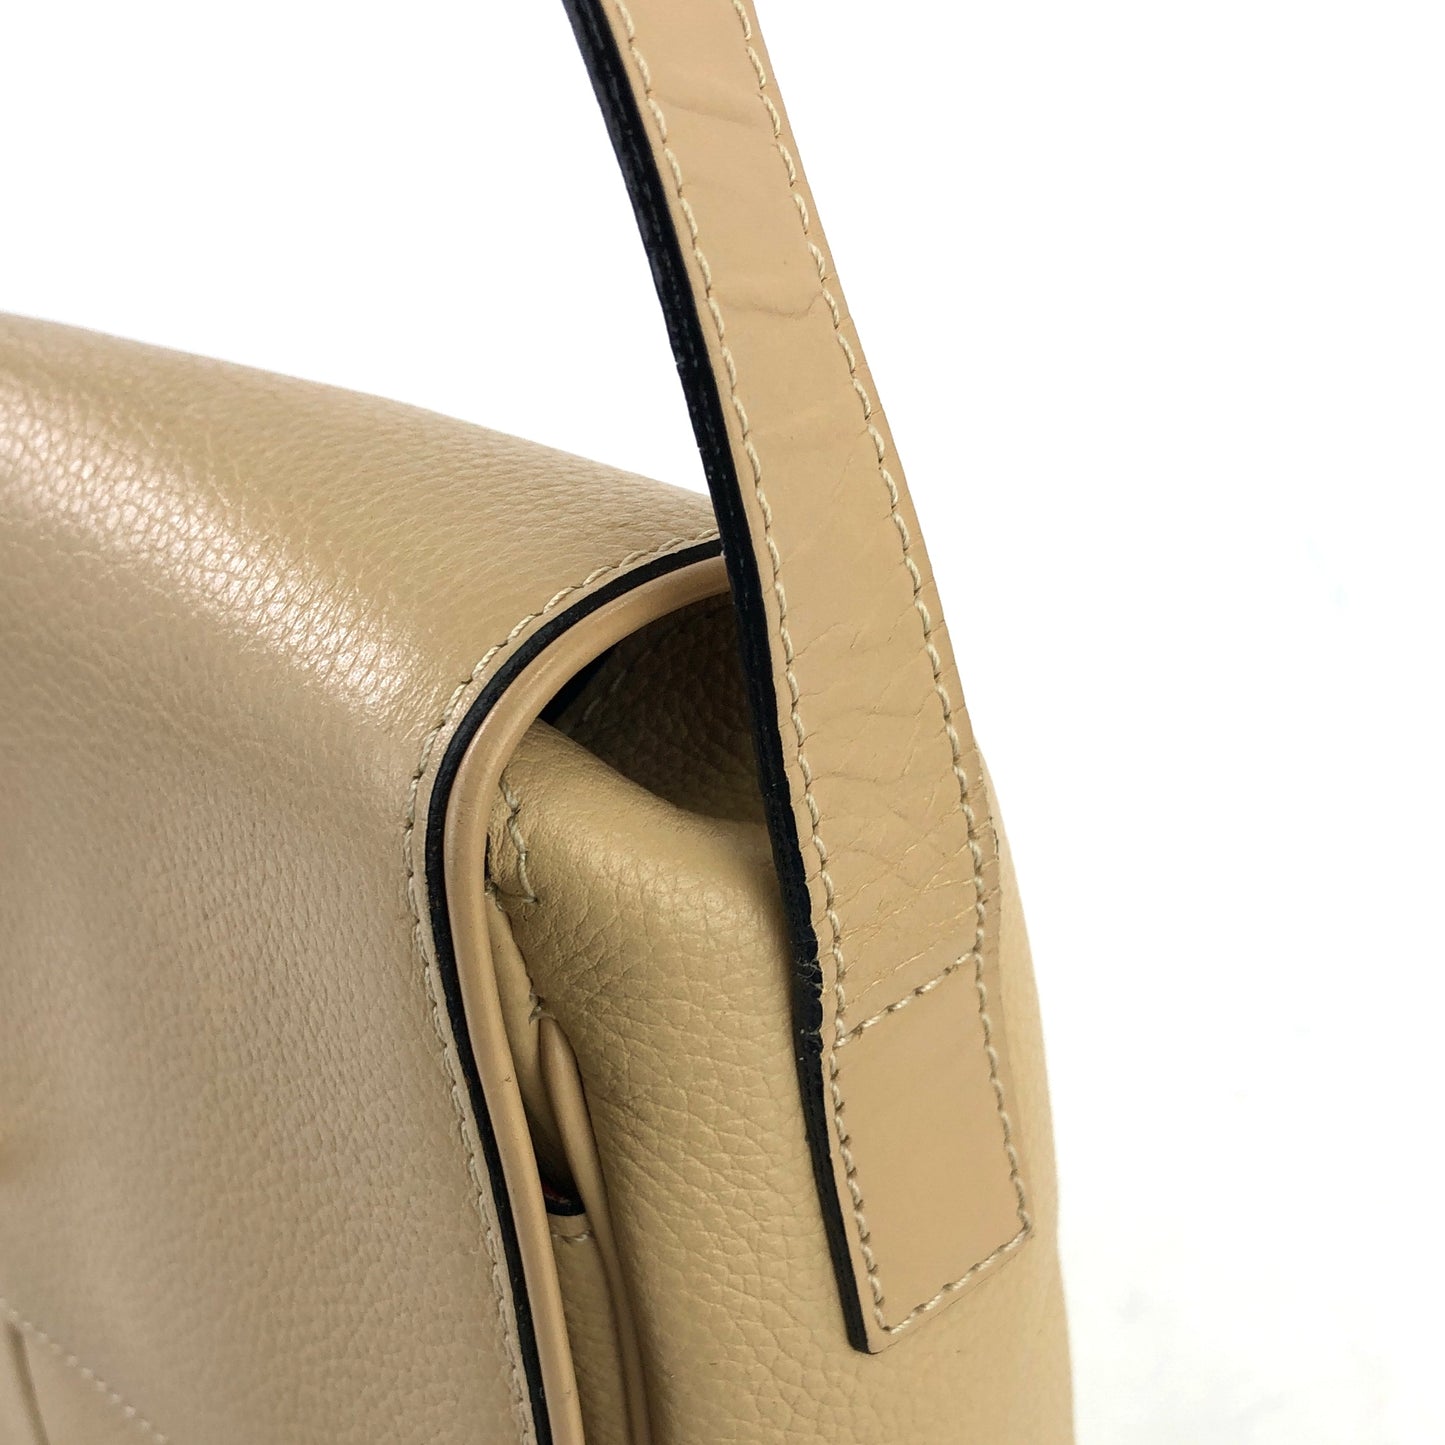 CELINE Mantel Gancini grain leather front pocket shoulder bag beige old Celine vintage h4bdxz